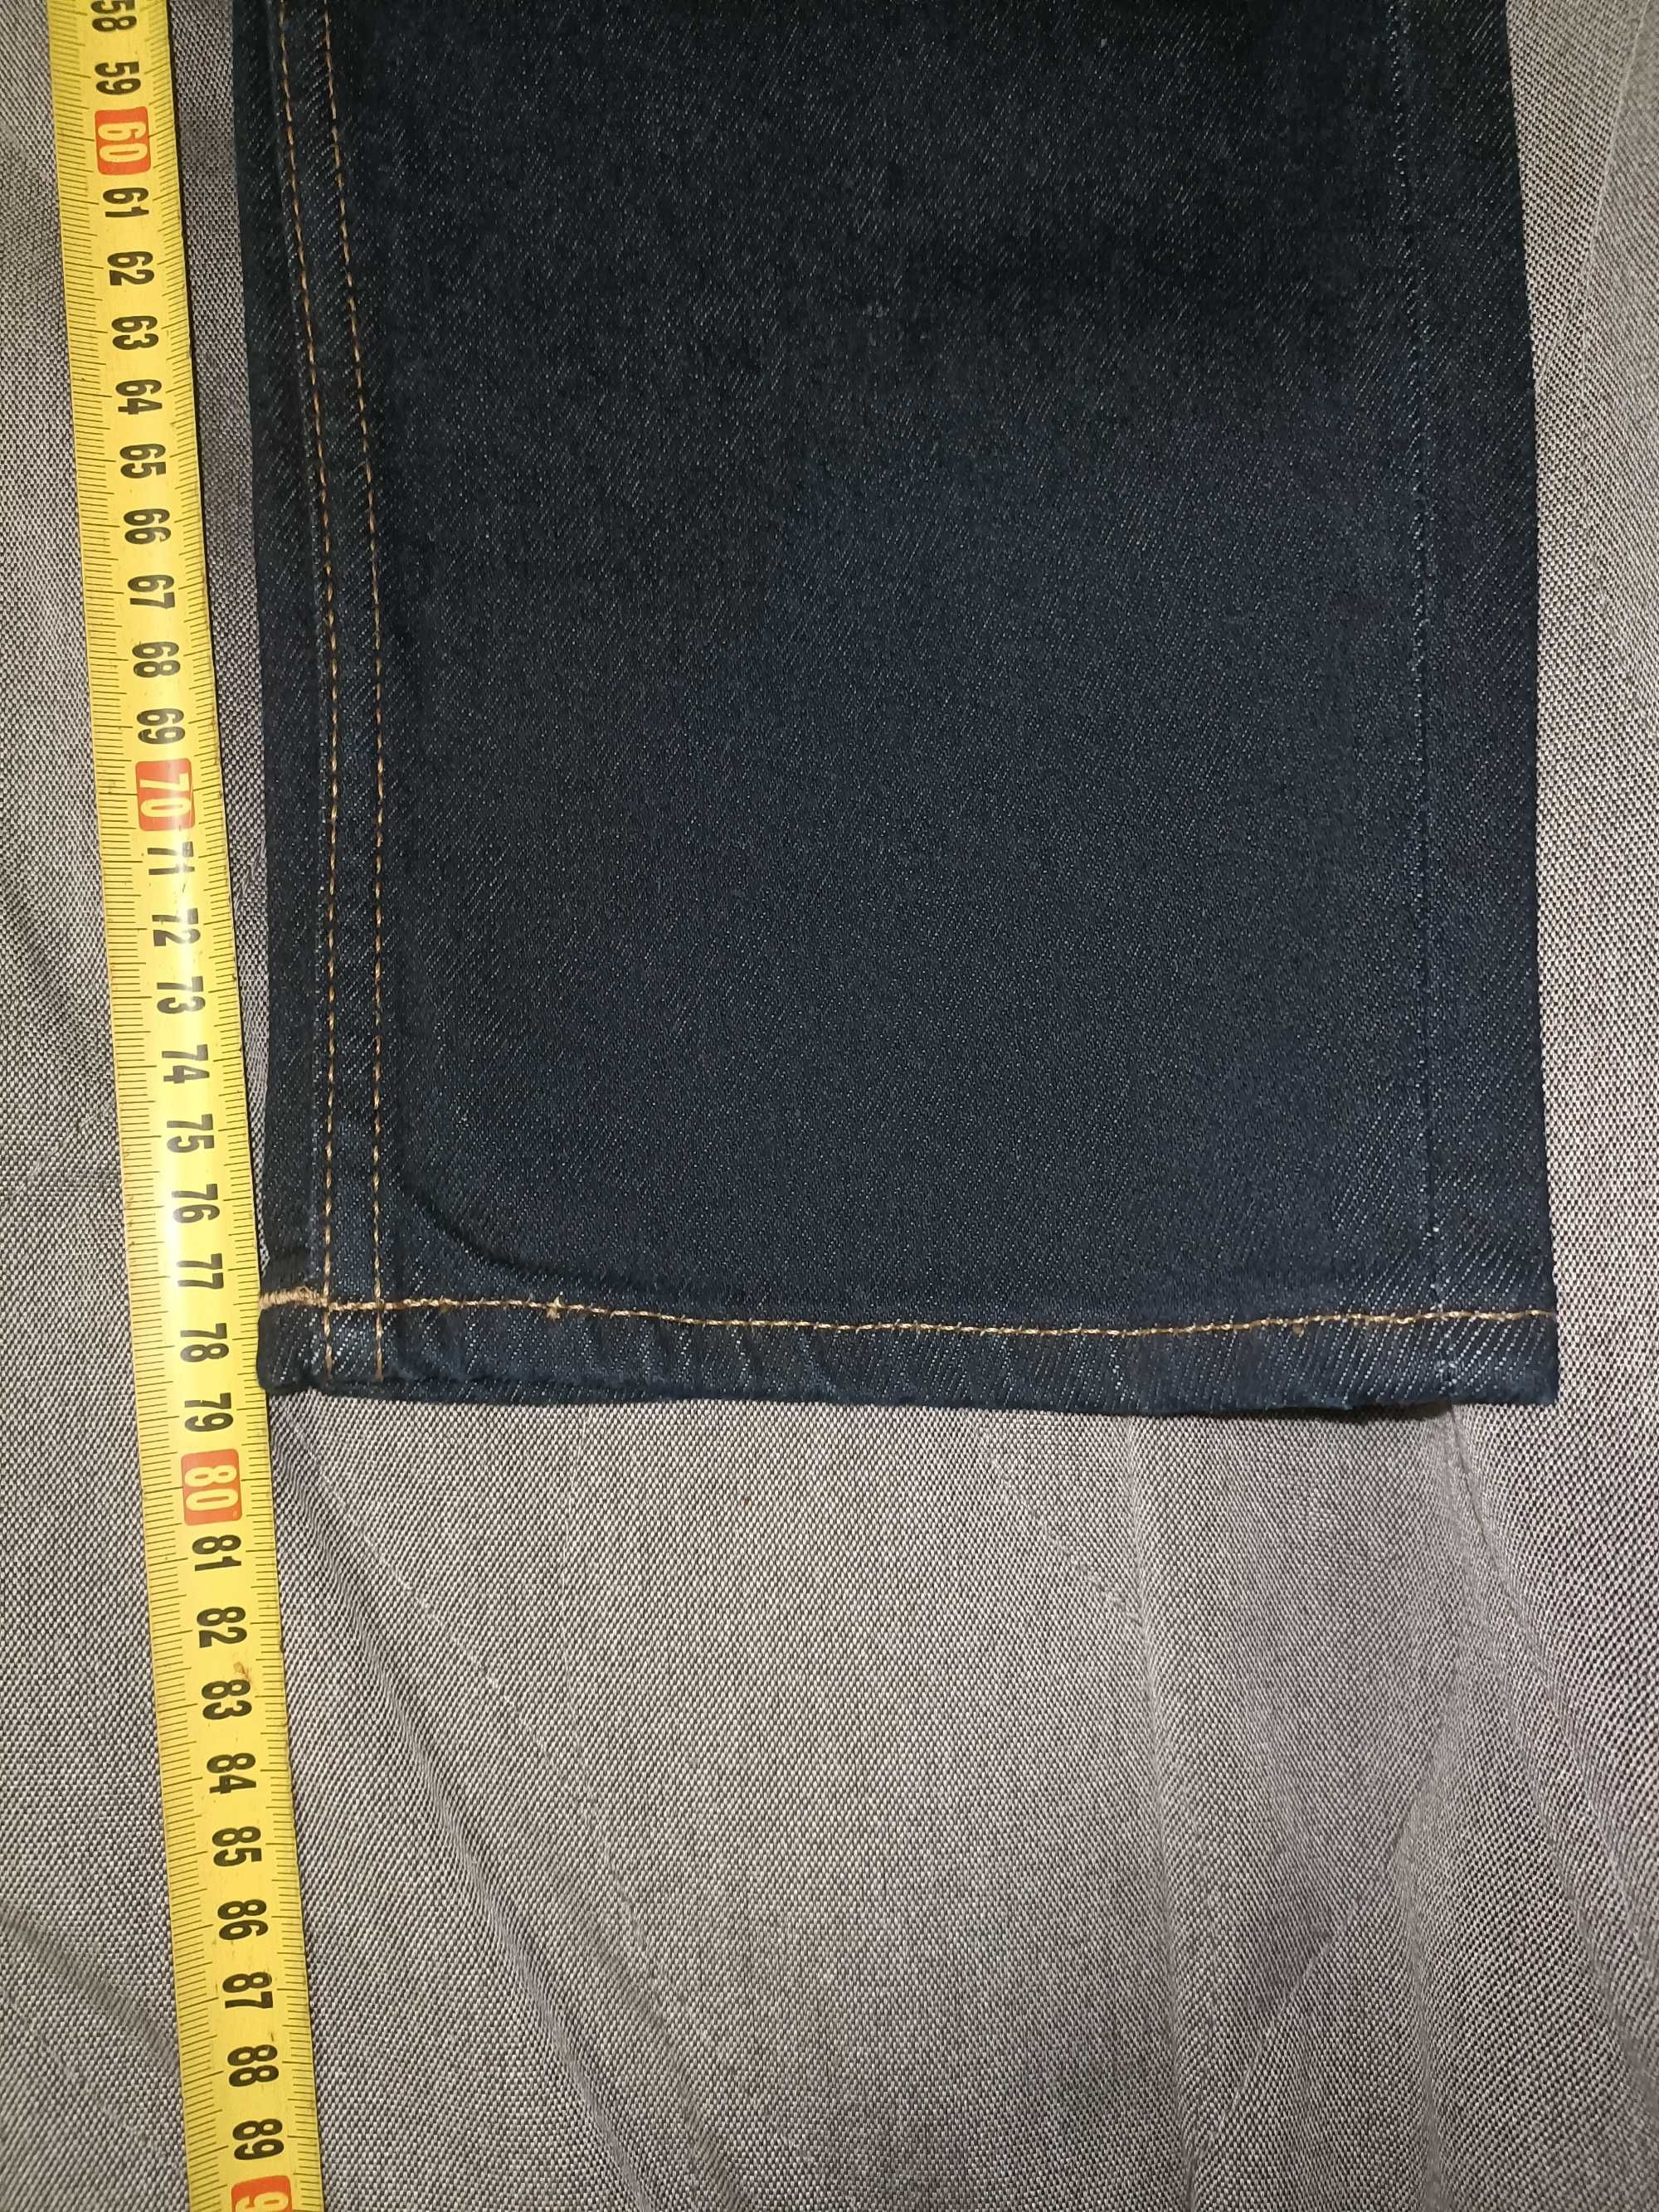 Spodnie męskie-Slim Jeans H&M, rozmiar 34/34, ciemnoniebieskie (nowe)